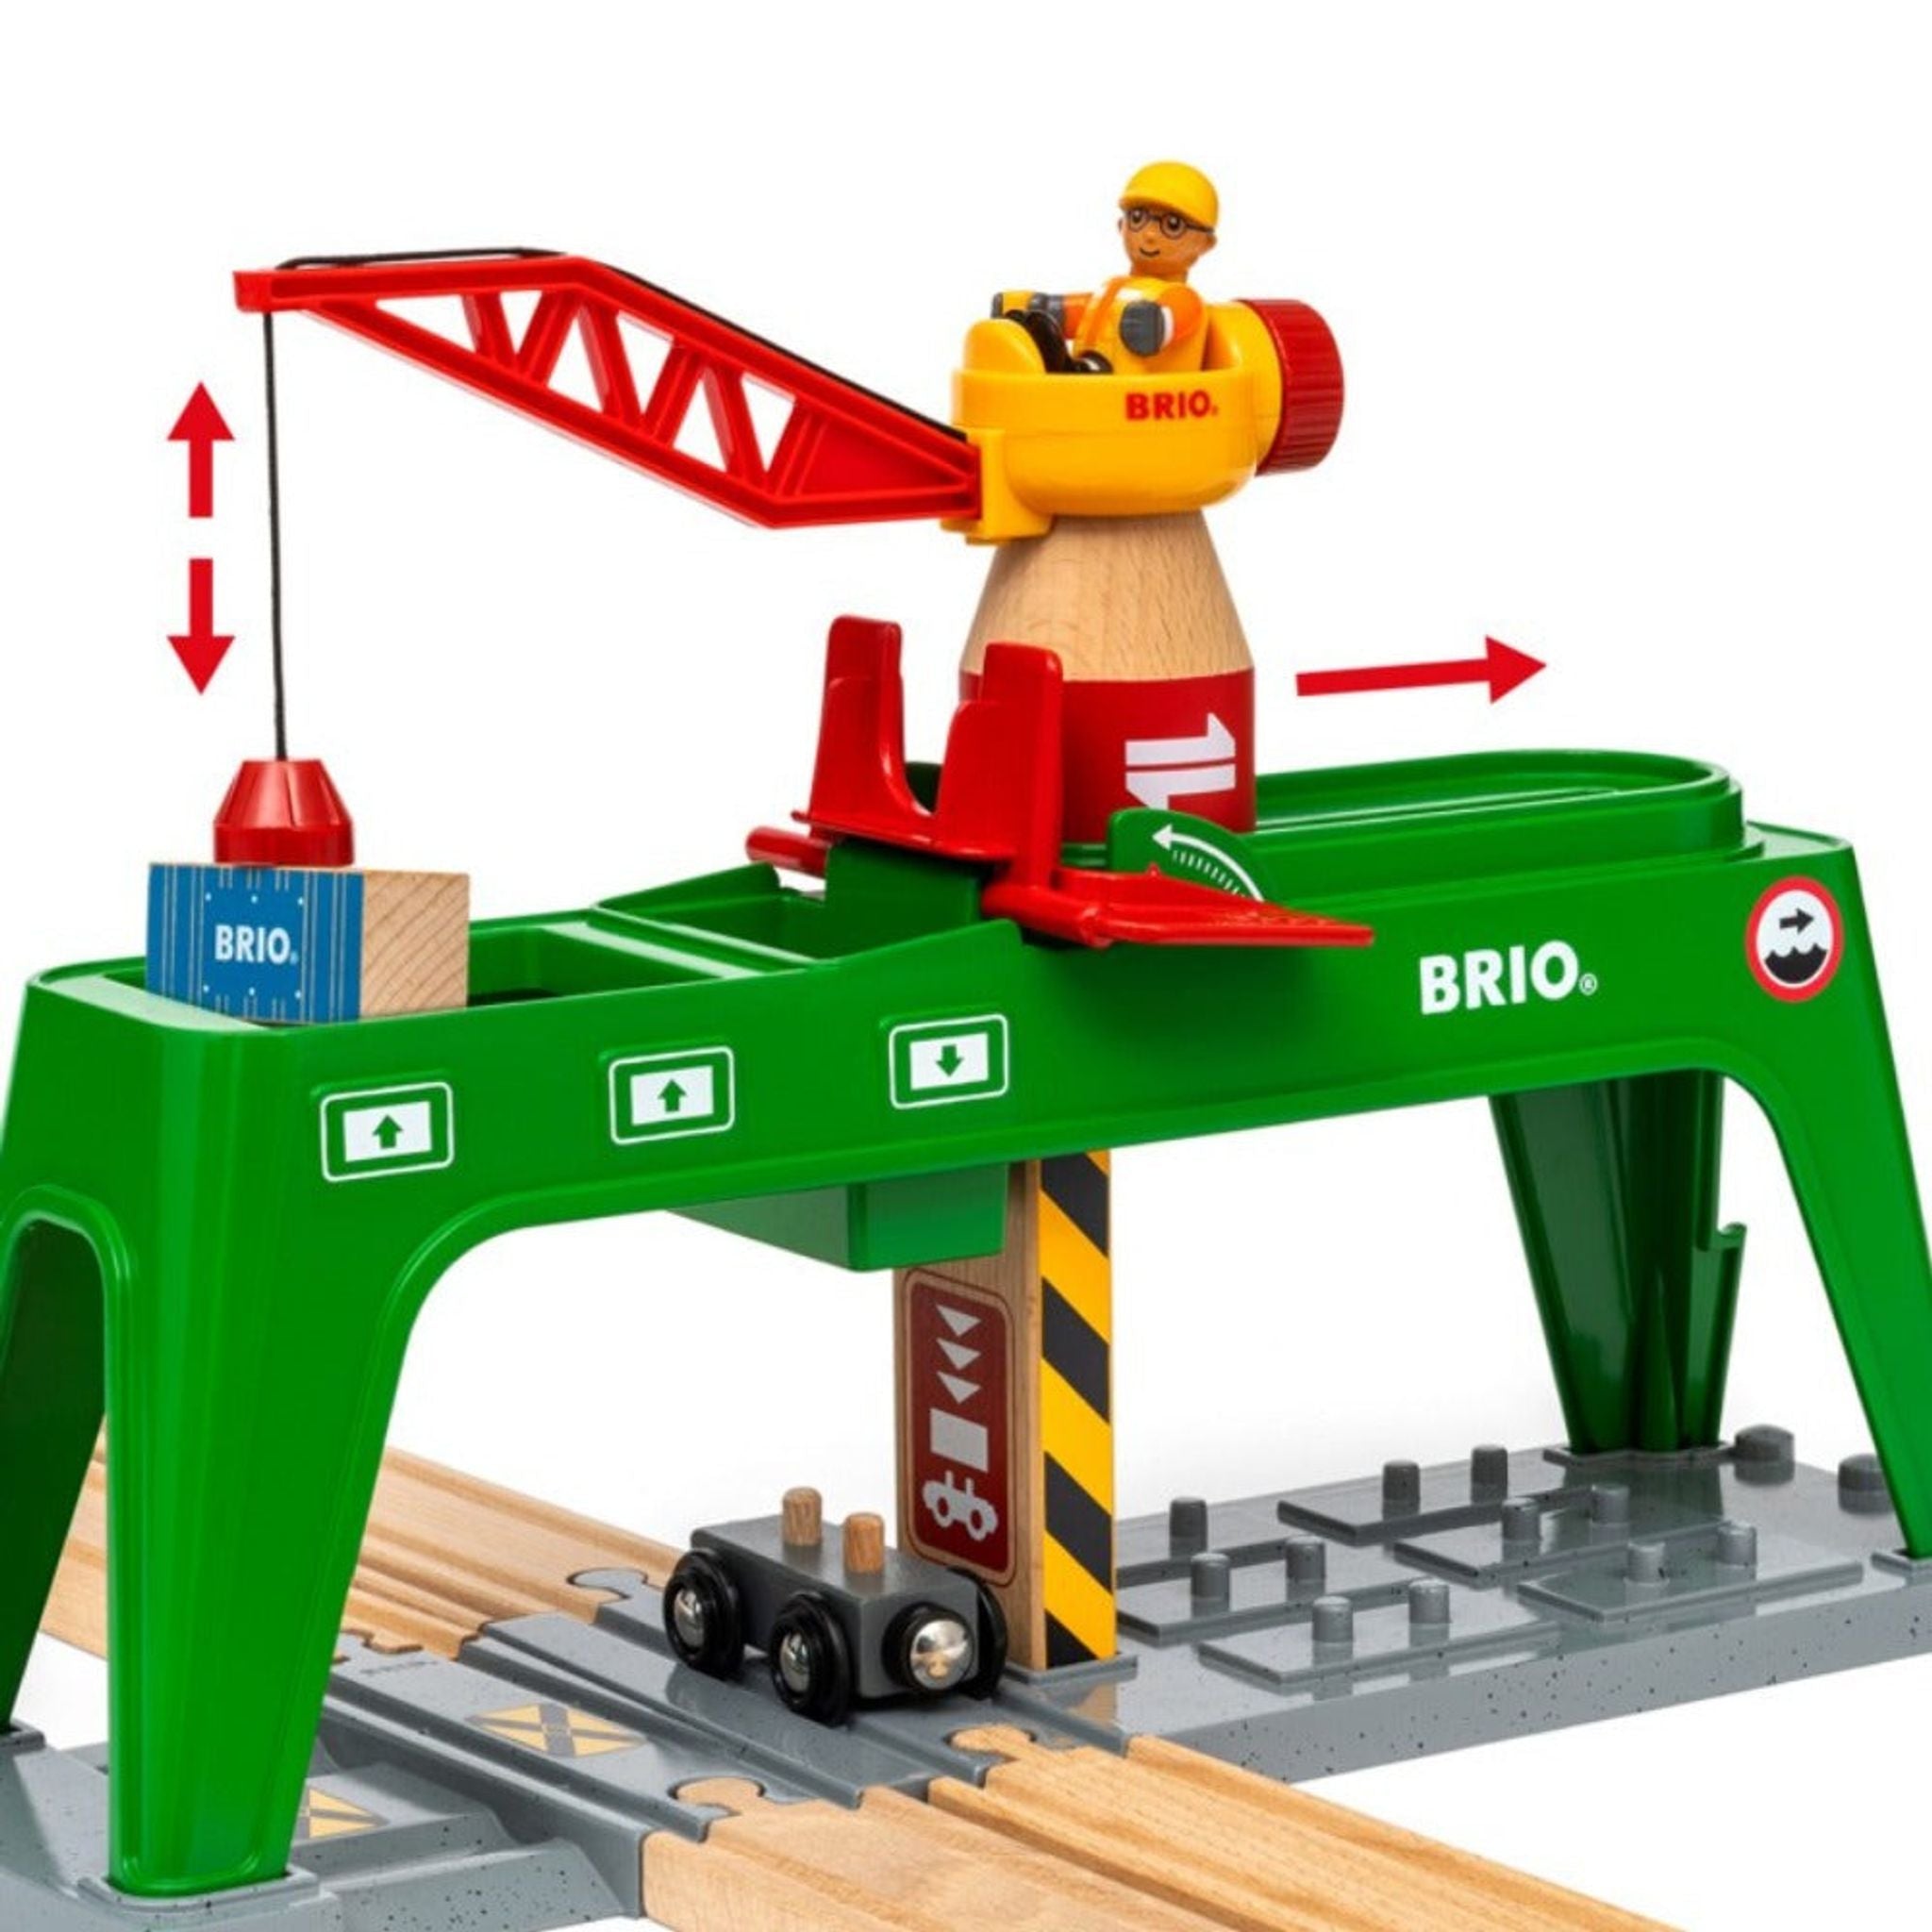 BRIO Crane - Container Crane 6 pieces - Toybox Tales